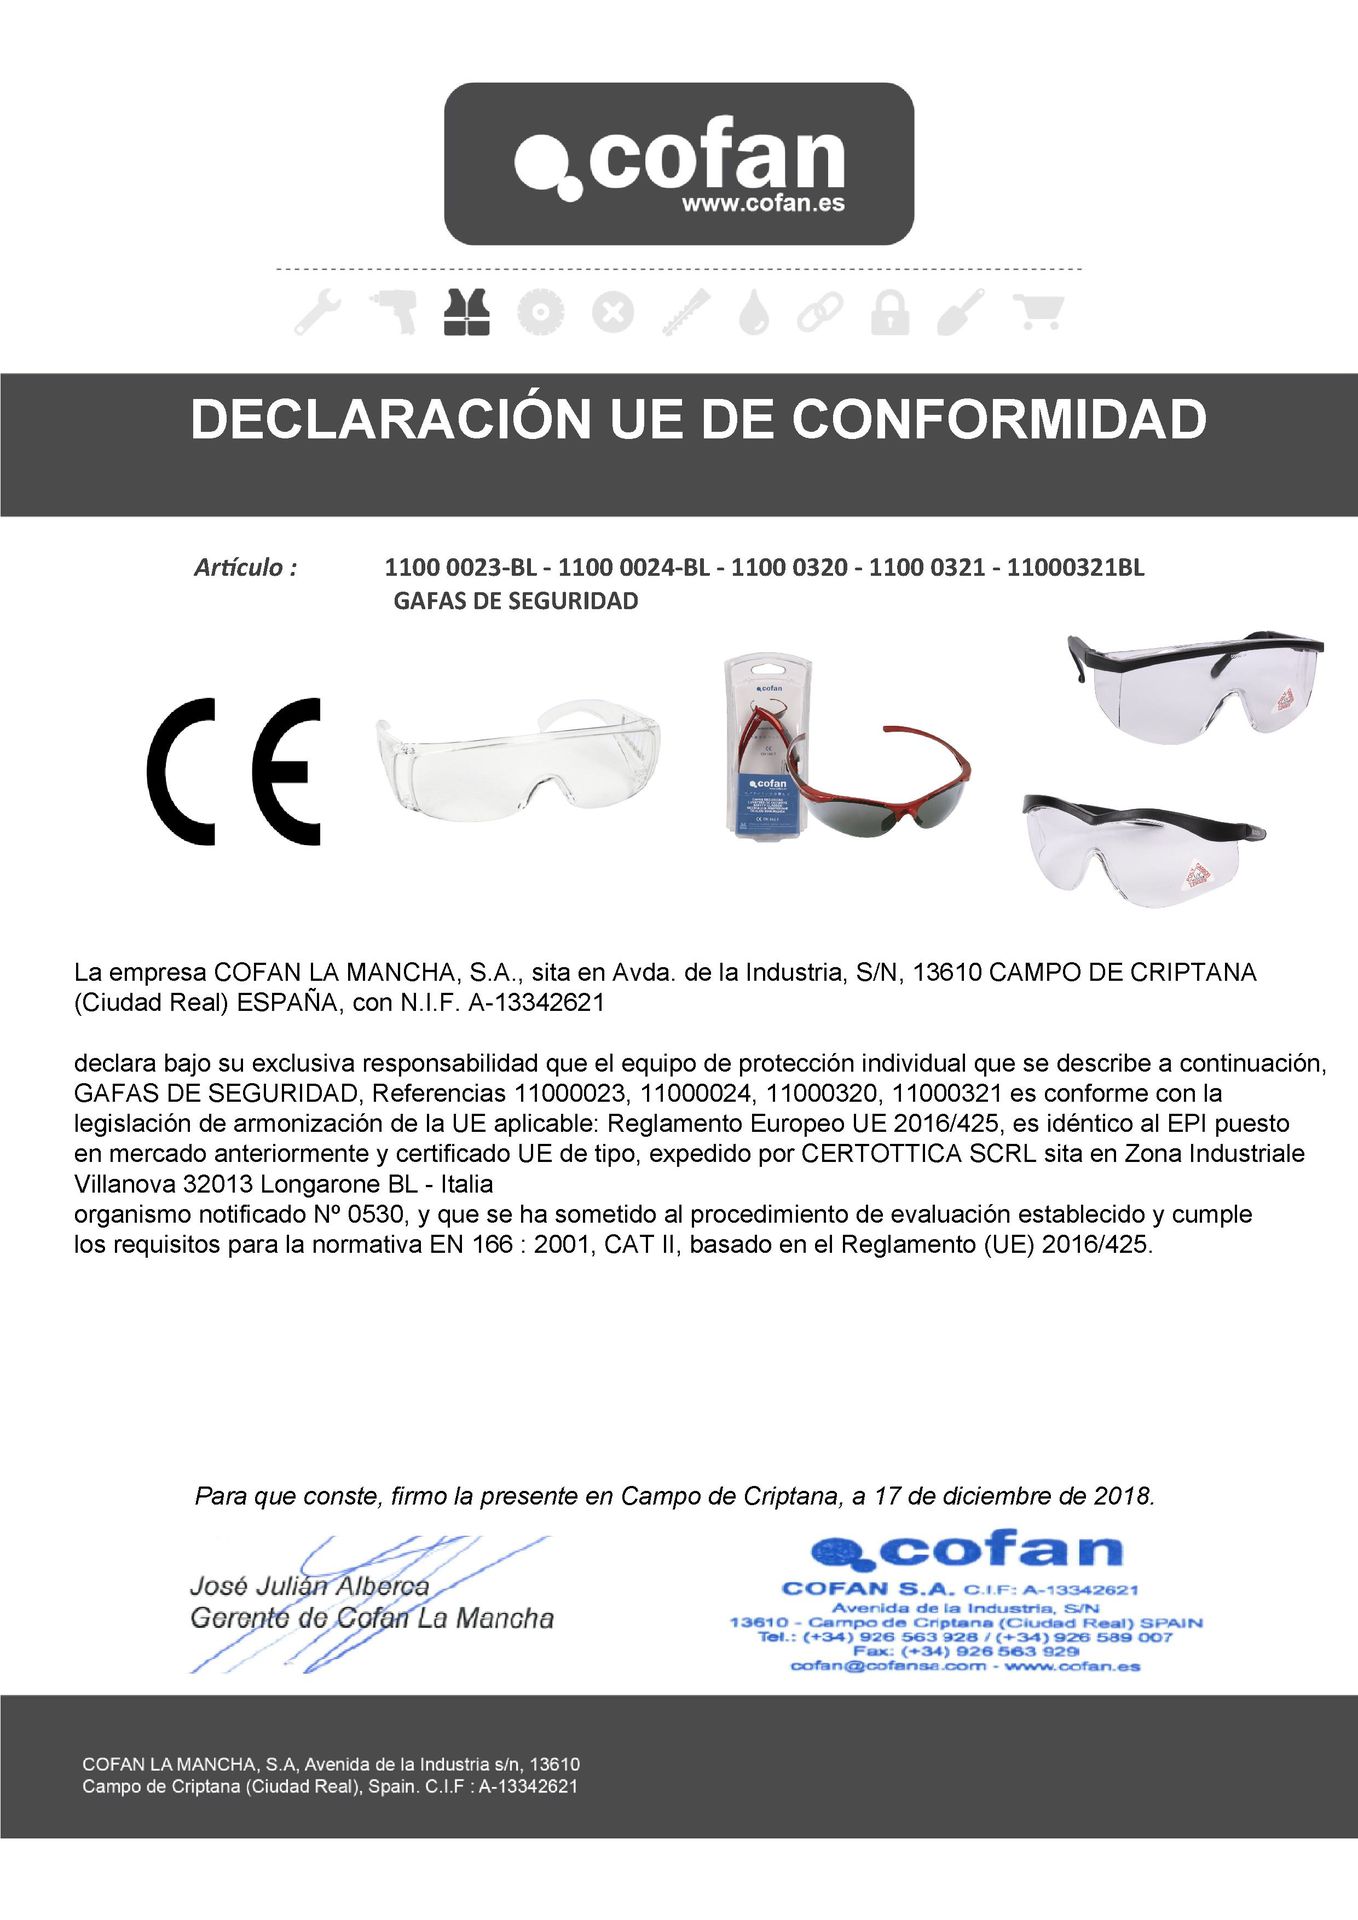 Declaracion de Conformidad de Gafas de Seguridad Contra Impactos Ref. 11000024